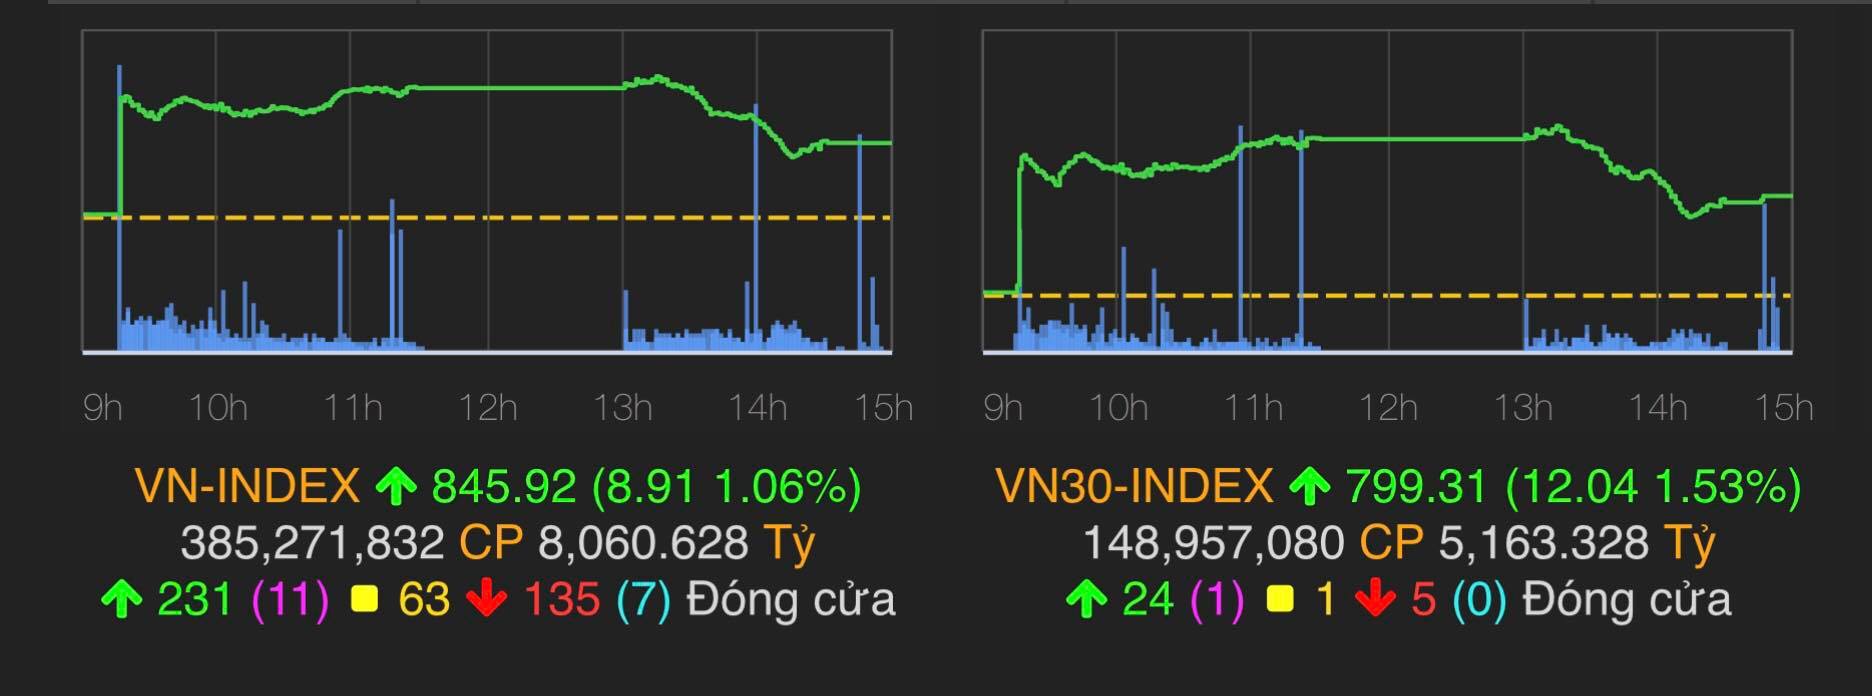 Chỉ số VN-Index tăng 8,91 điểm (1,06%) lên 845,92 điểm.